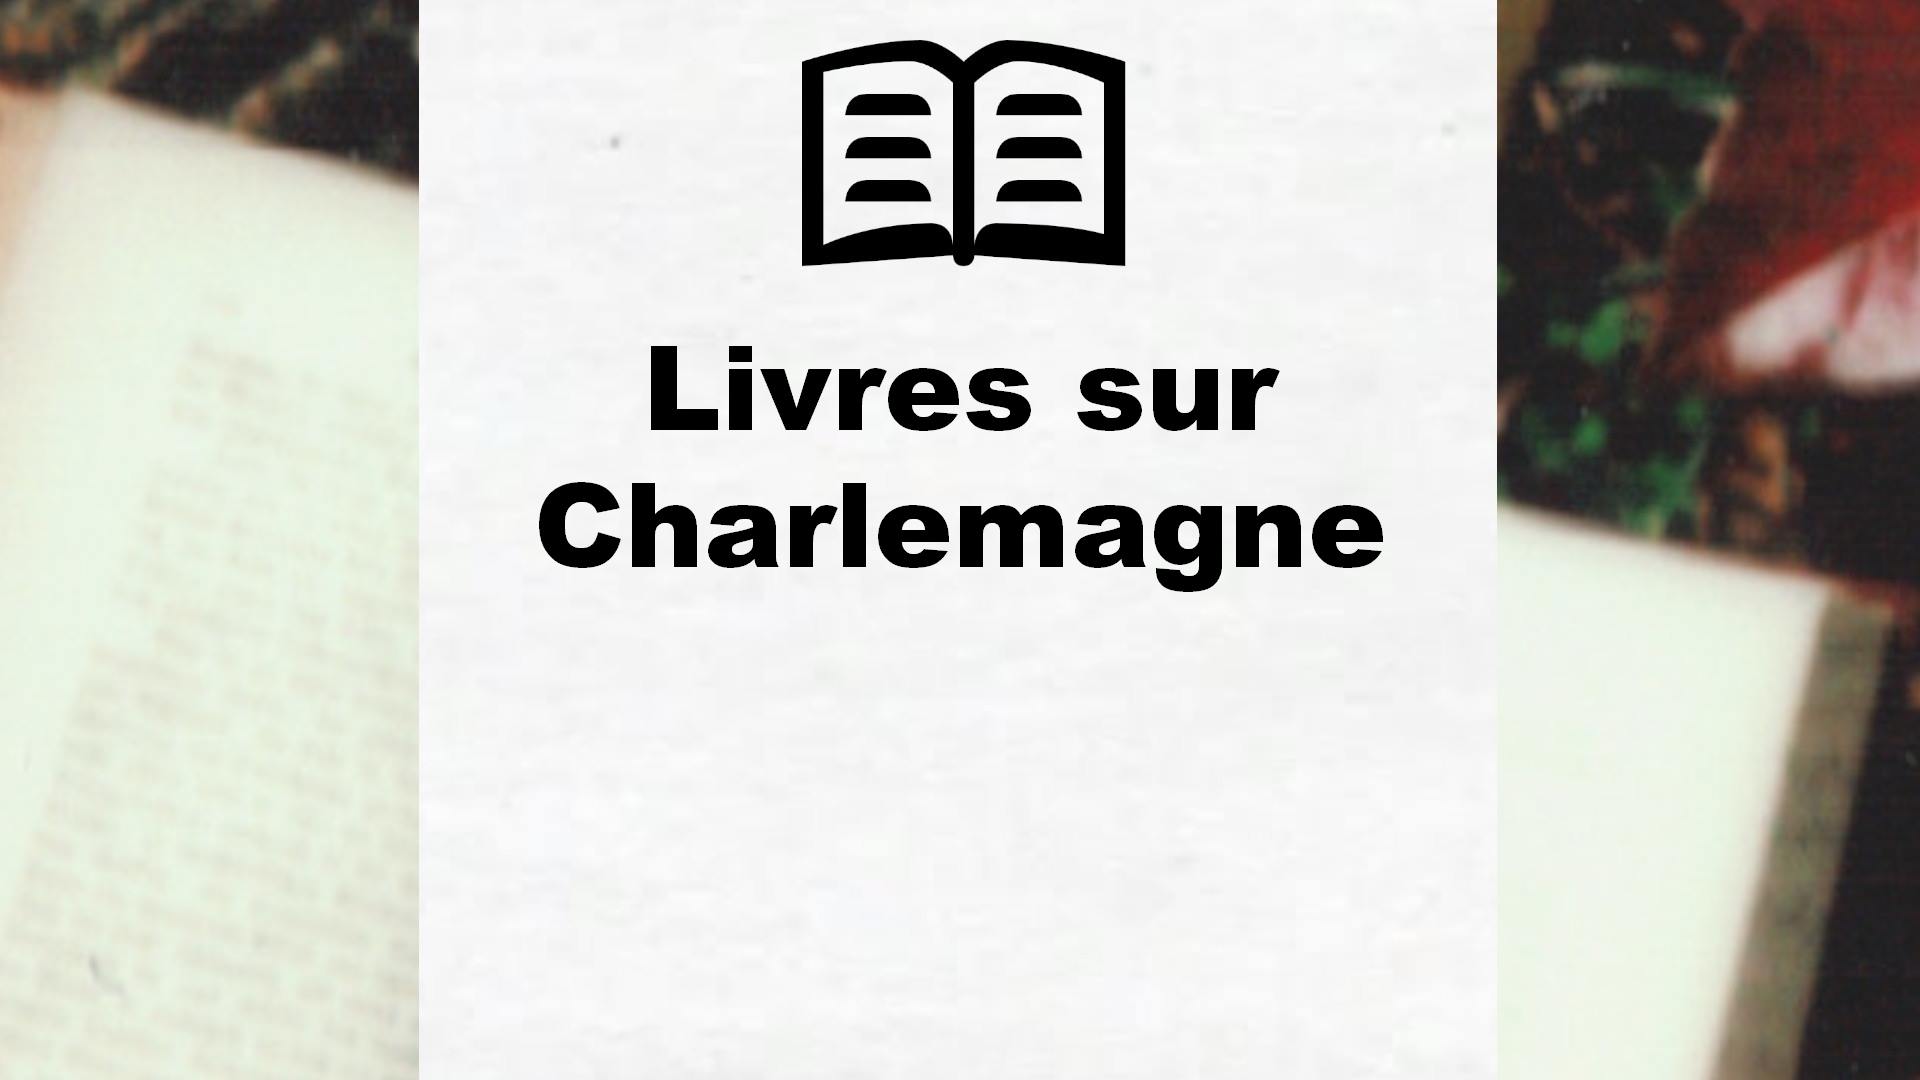 Livres sur Charlemagne